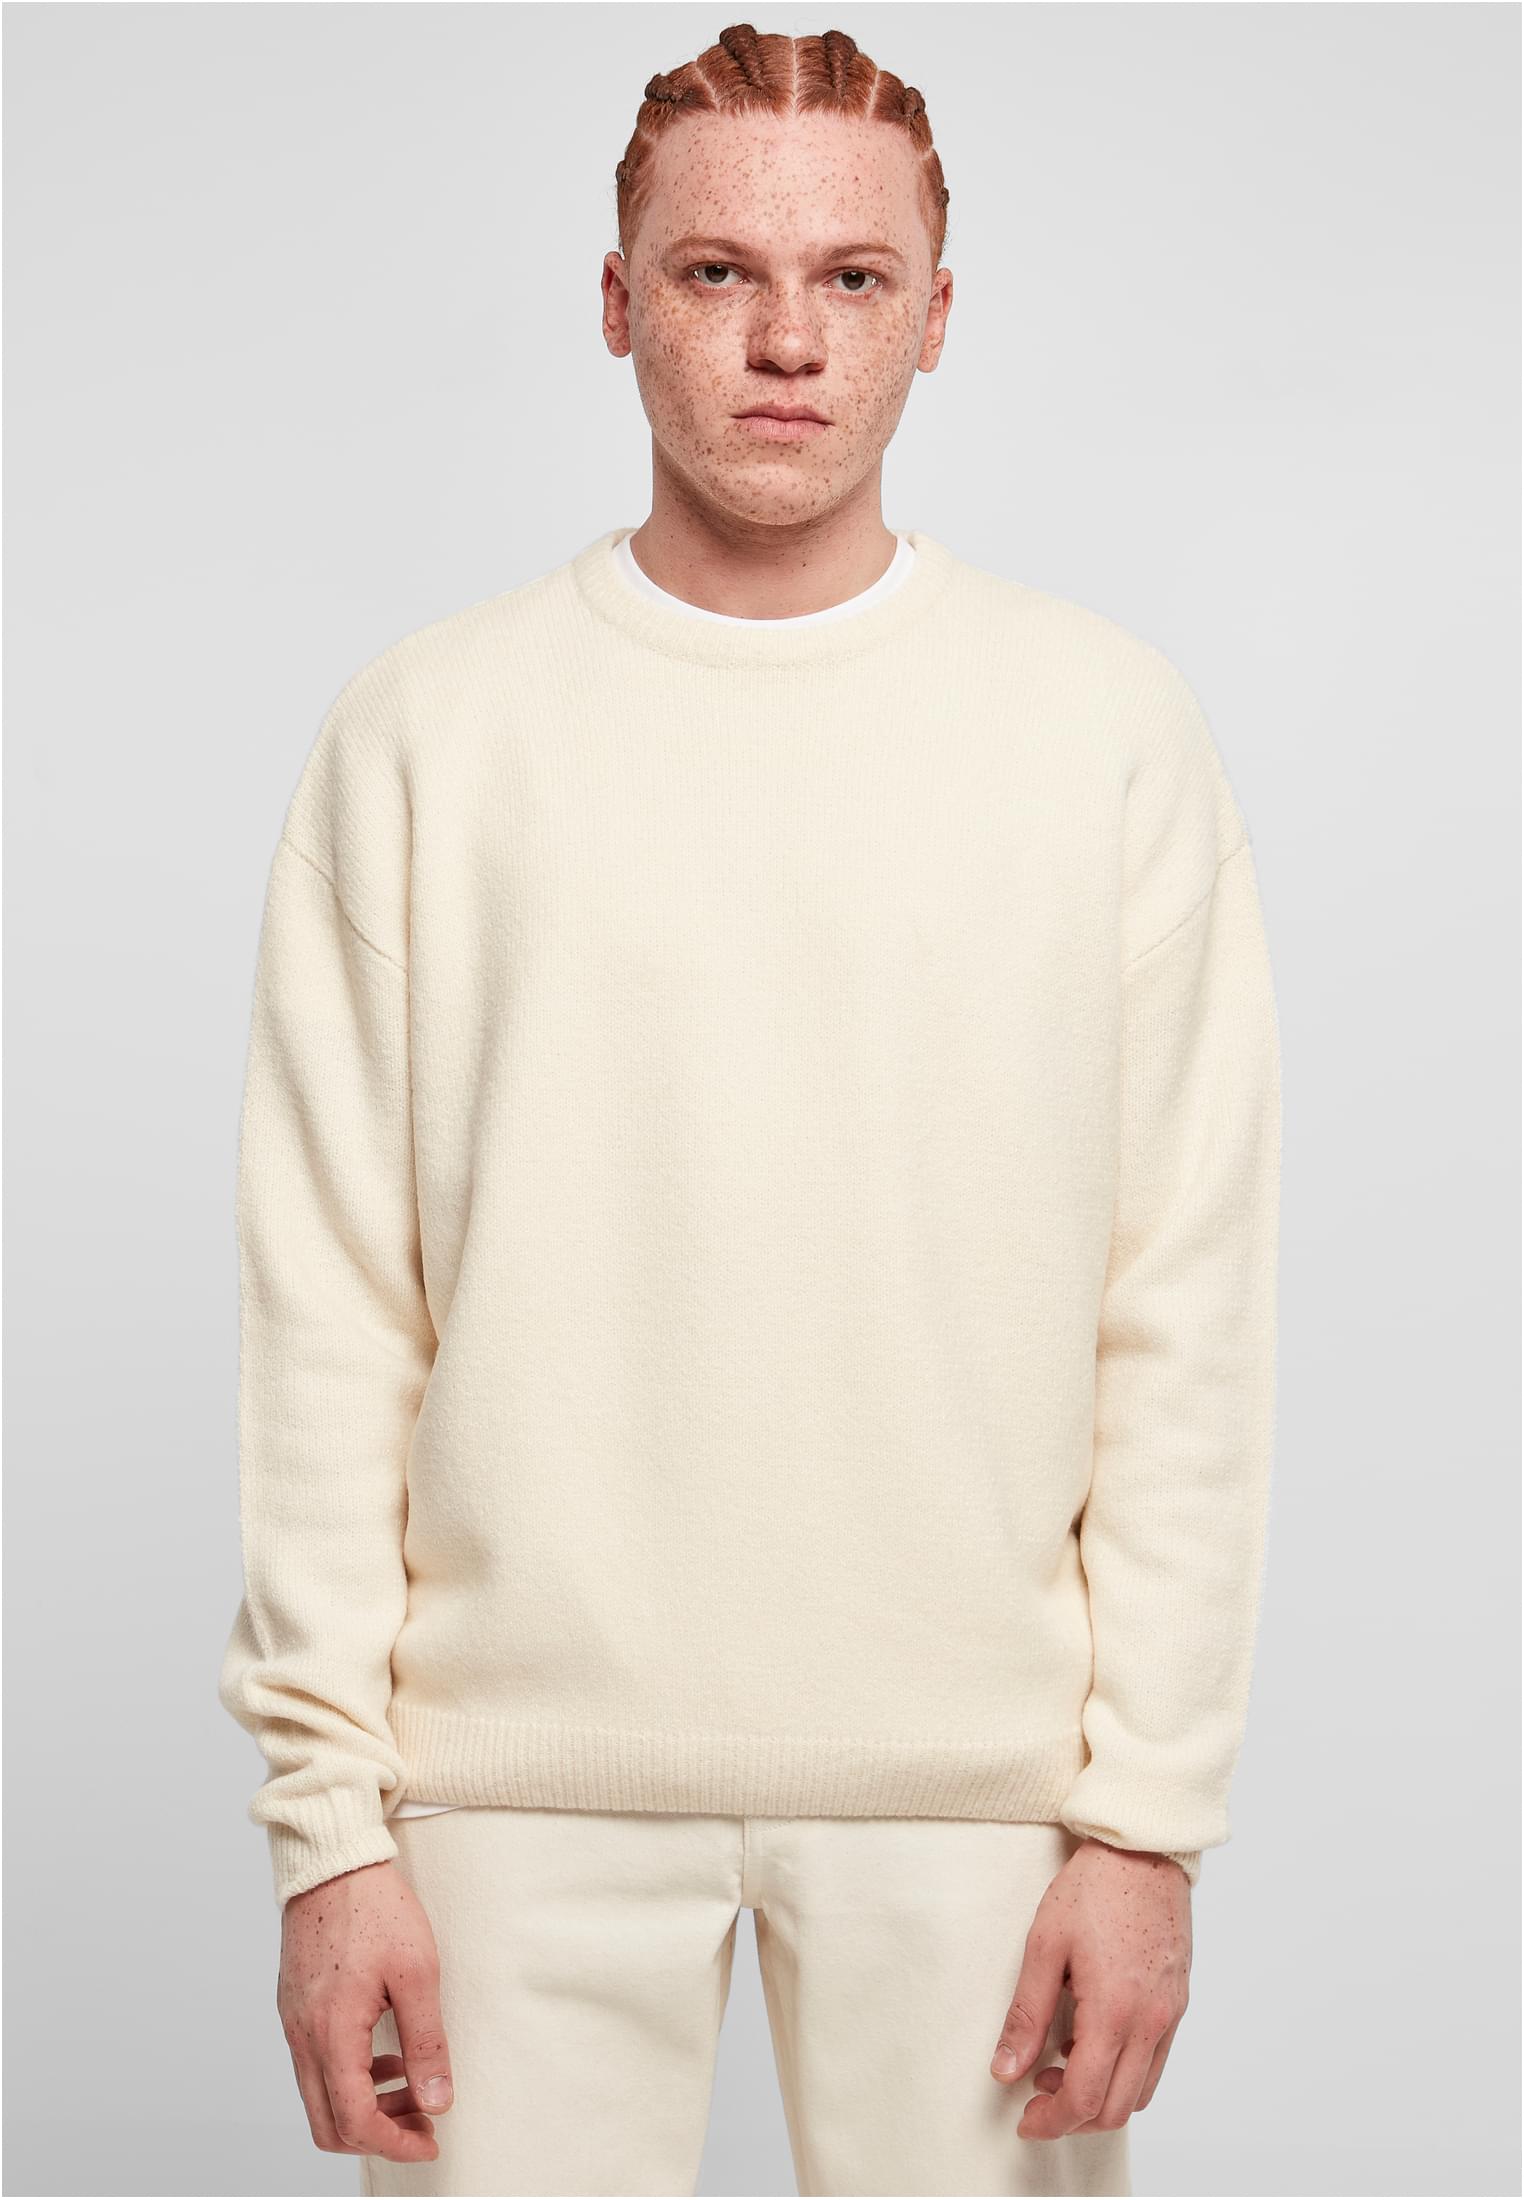 Oversized chunky whitesand sweater